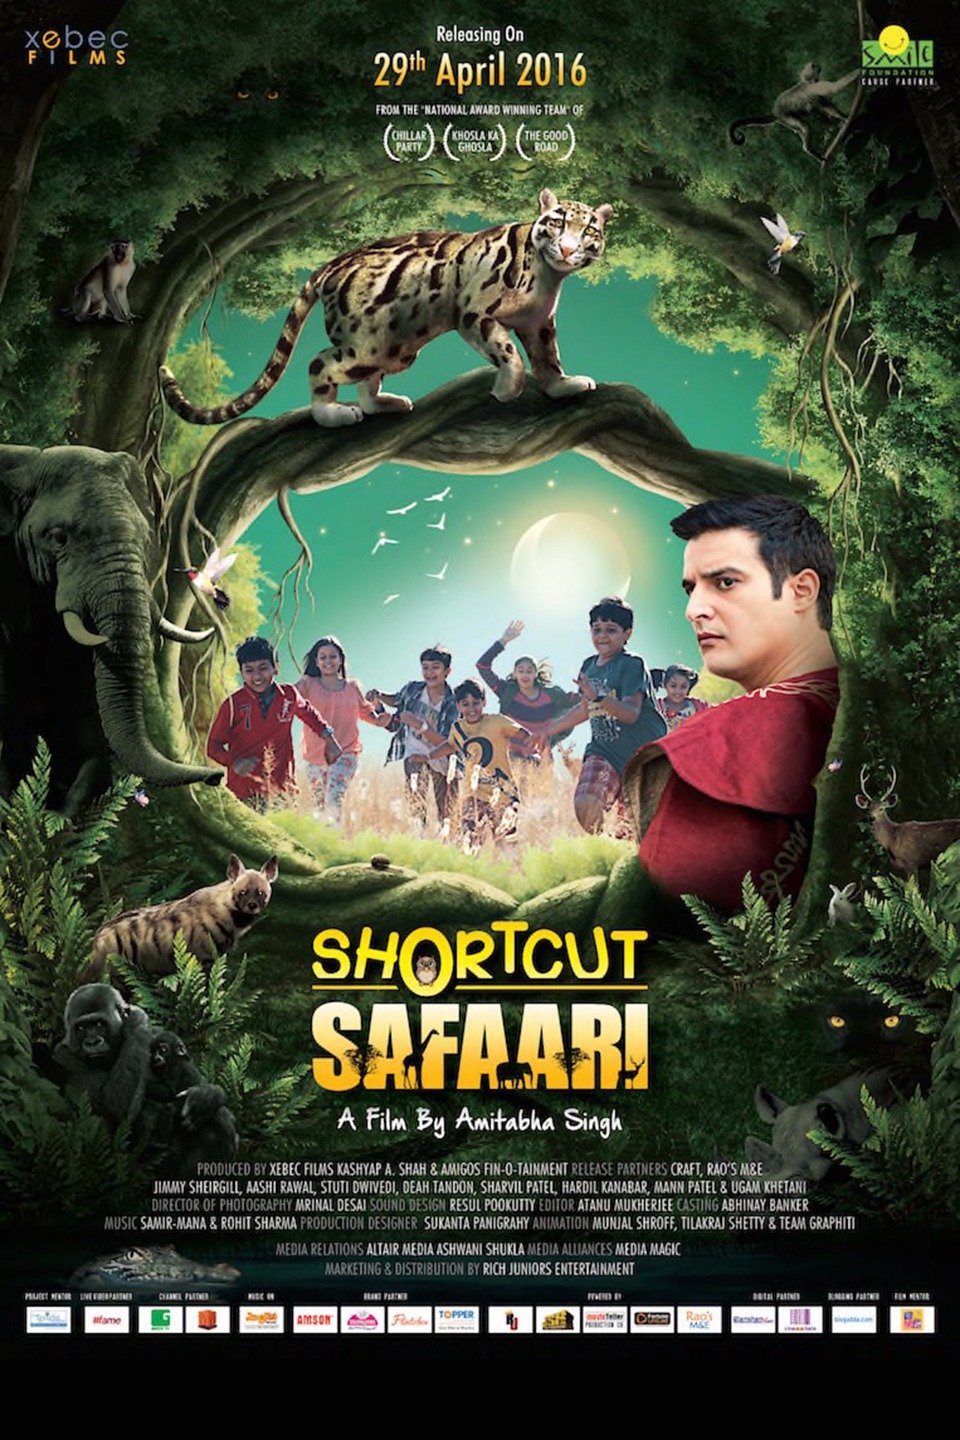 shortcut safari full movie download